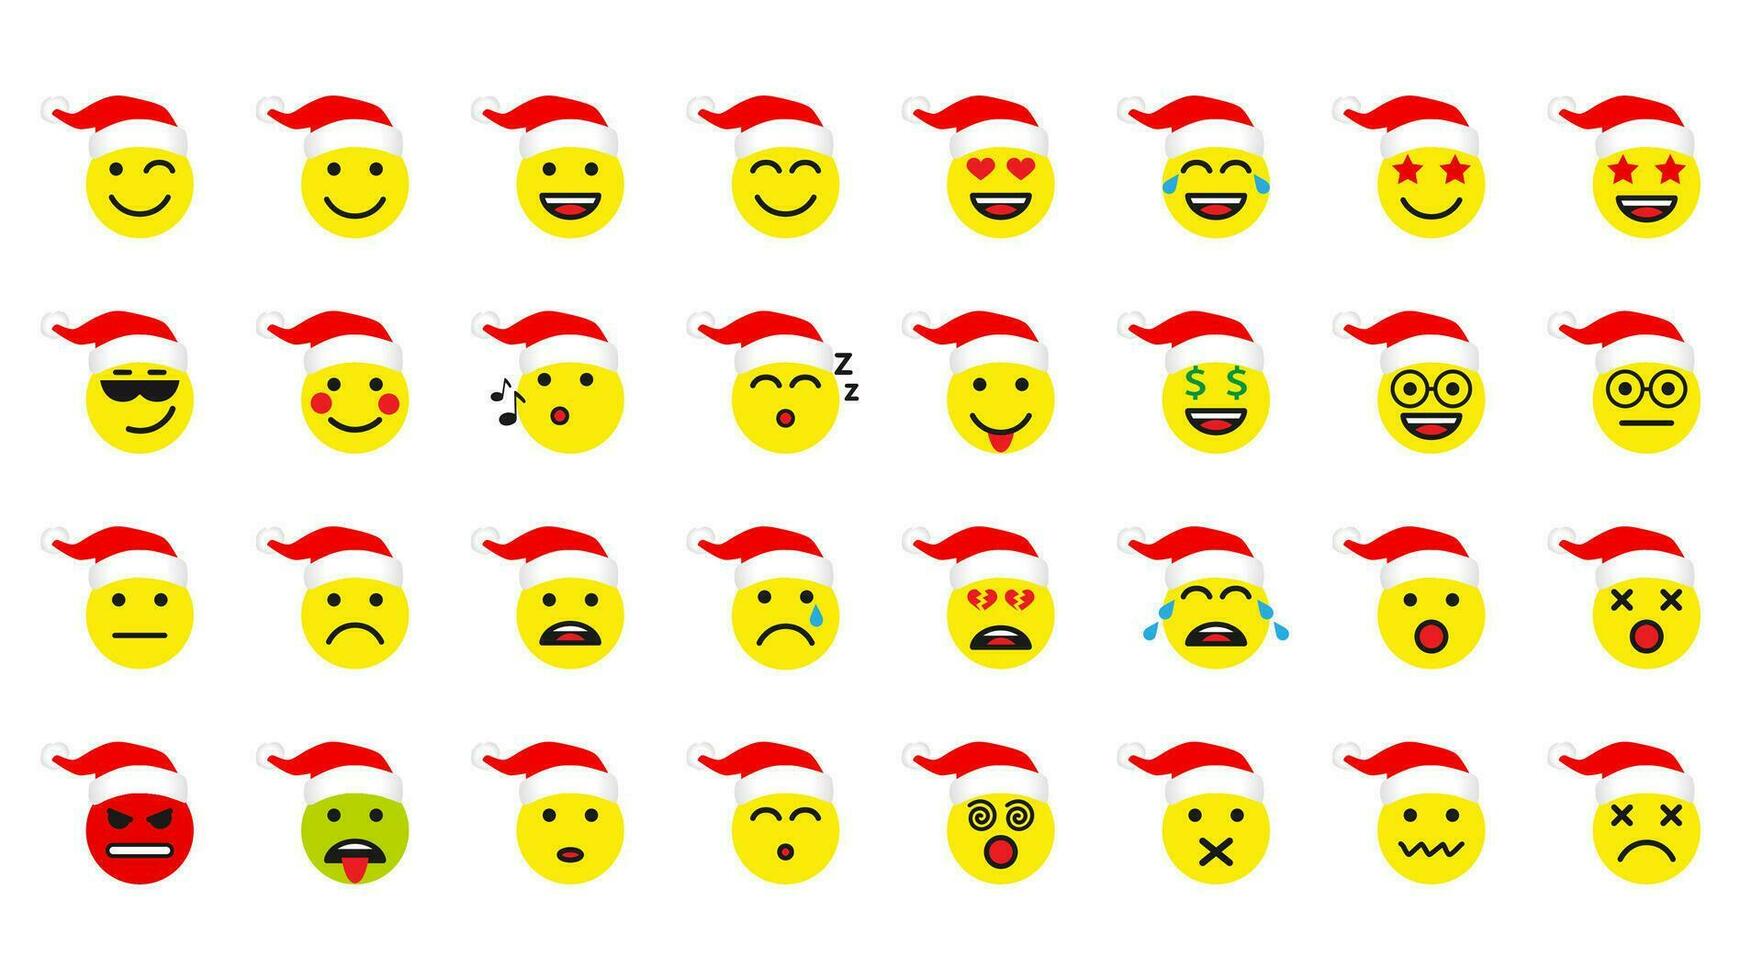 de kerstman claus pictogrammen set. winter wit achtergrond. karakter gezicht lijnen sprekend ho-ho-ho en ander. vector